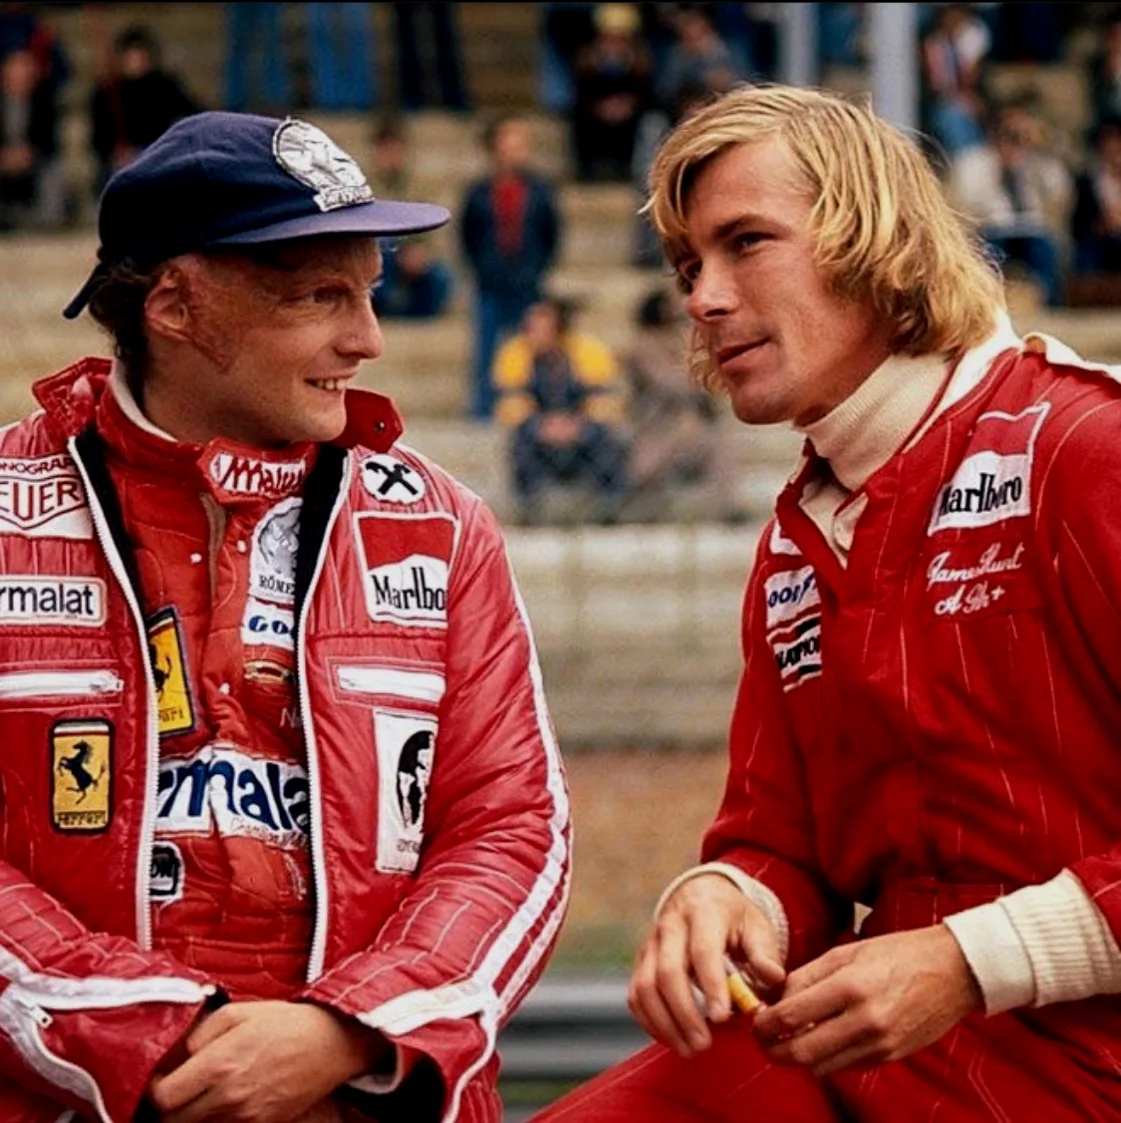 严谨精确的劳达与豪放激进的亨特都是70年代F1的代表人物。